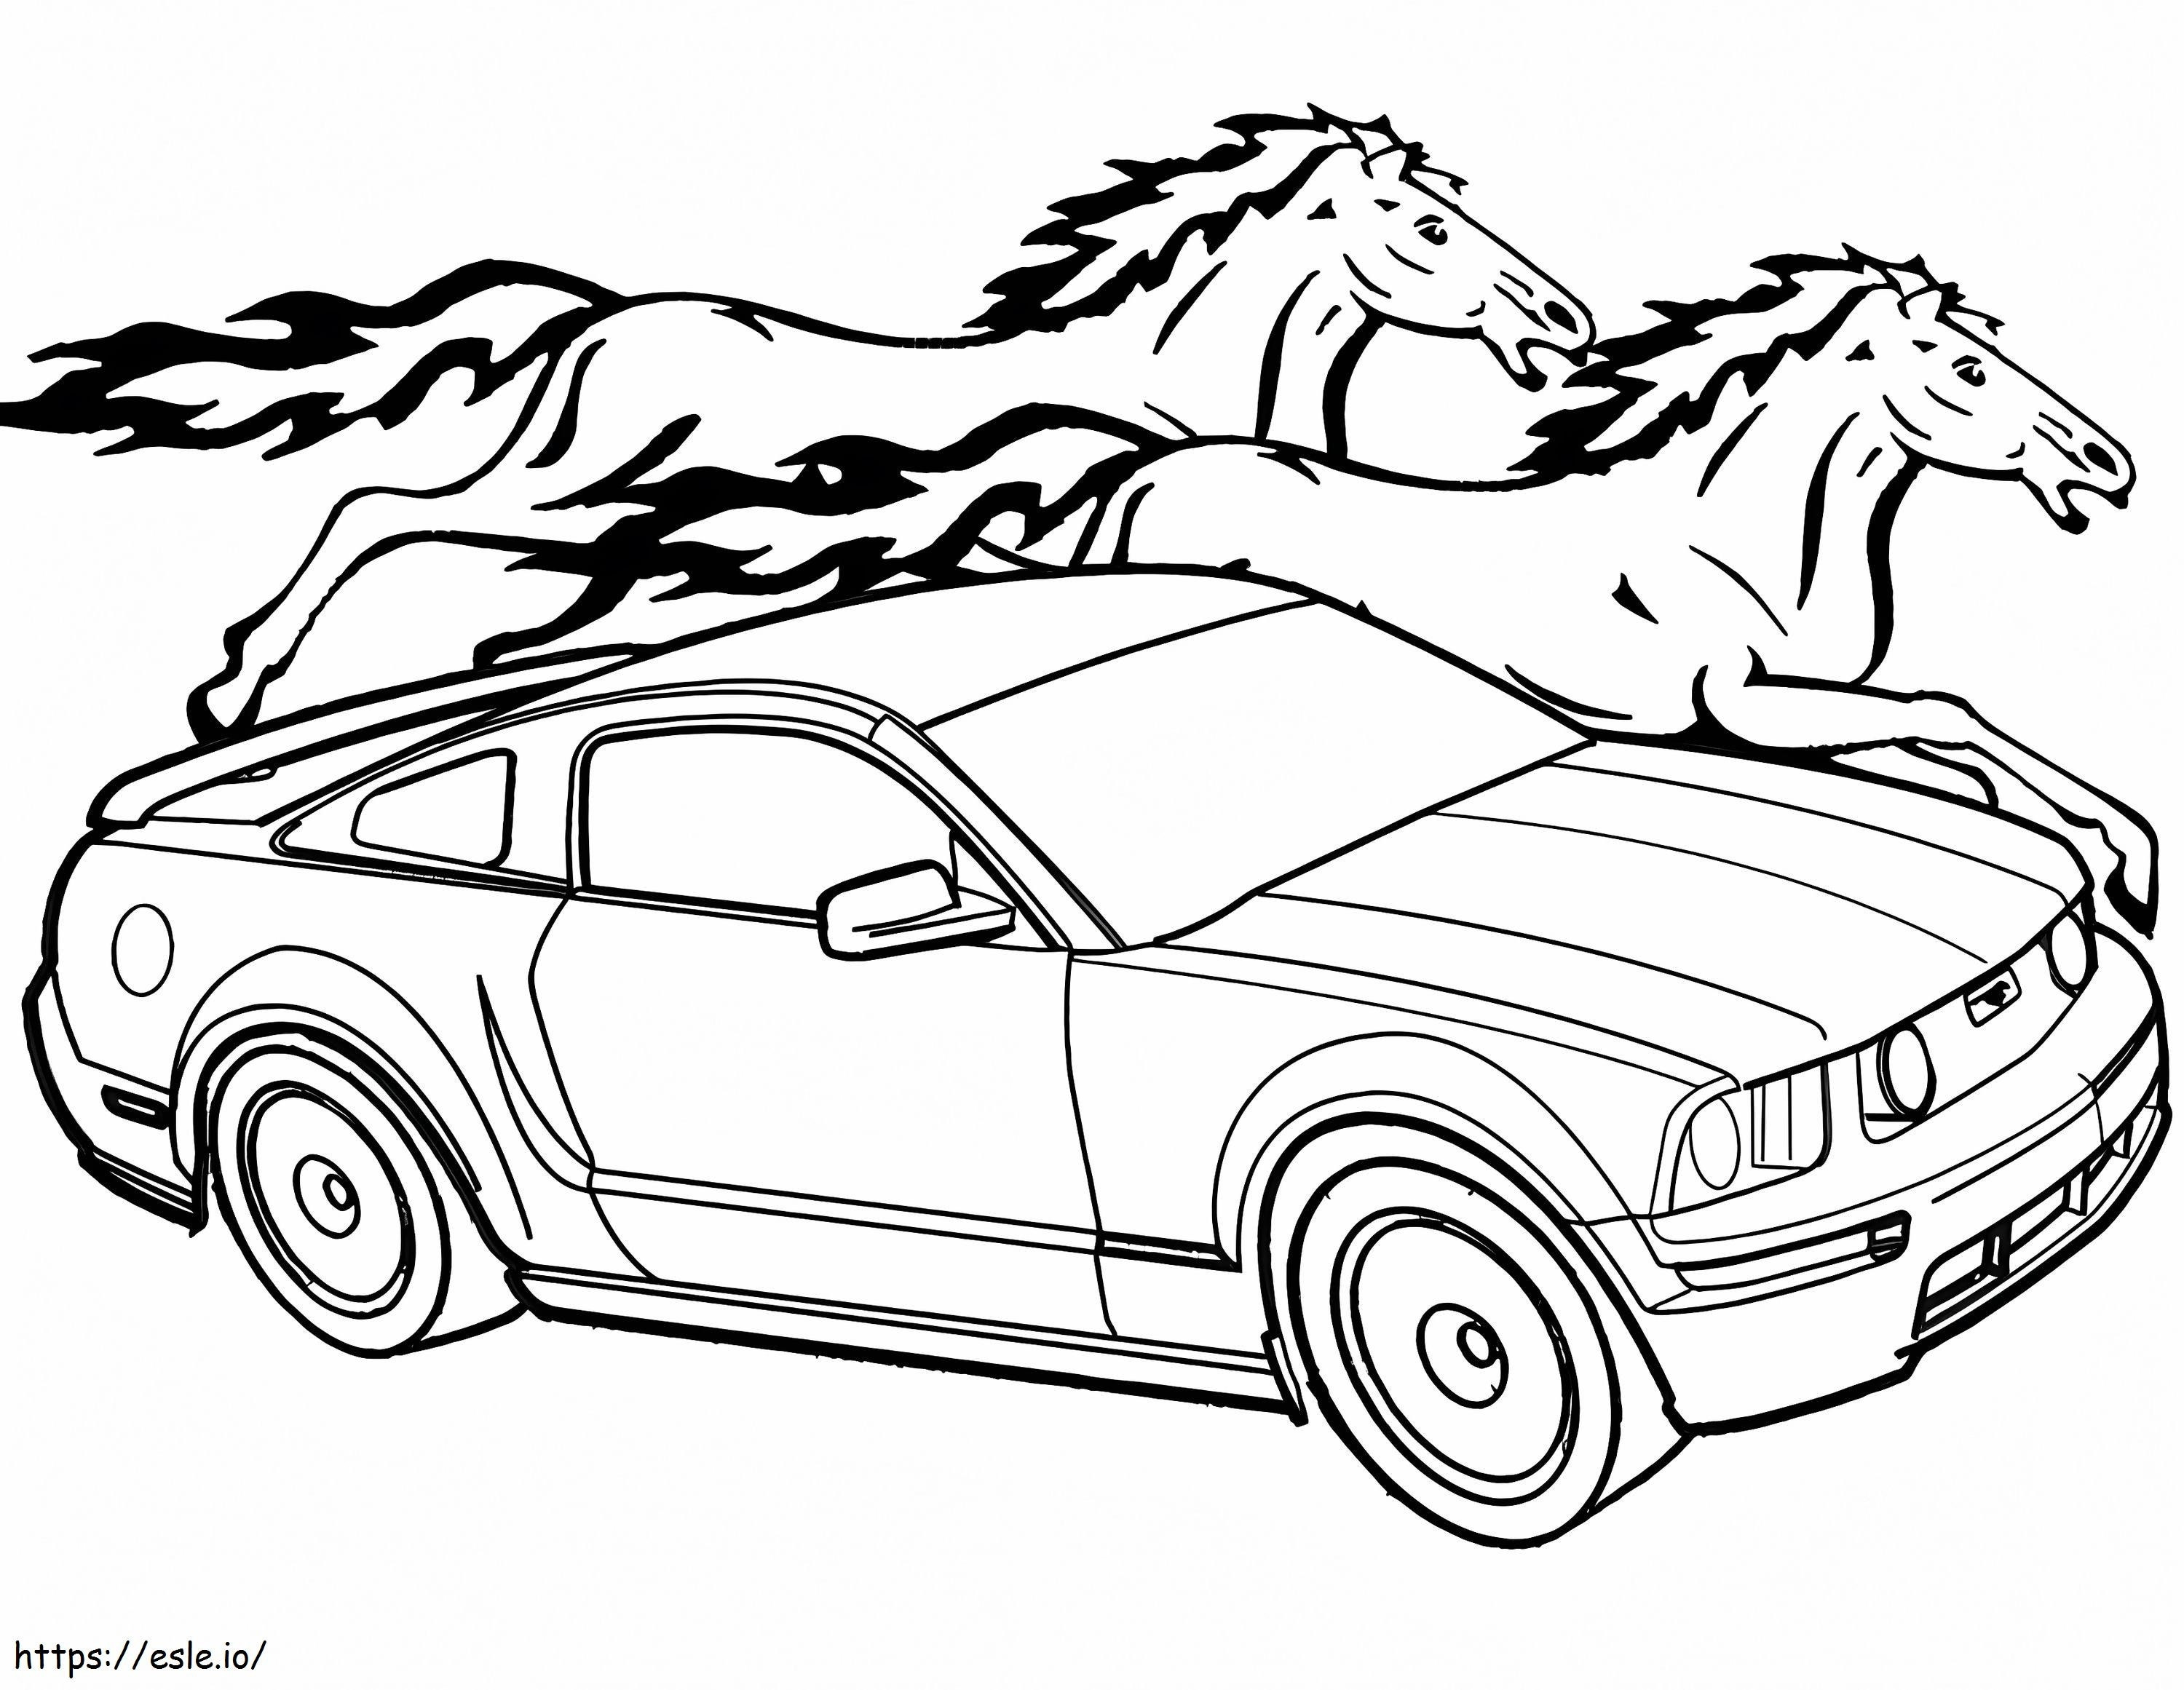 Masina Mustang de colorat